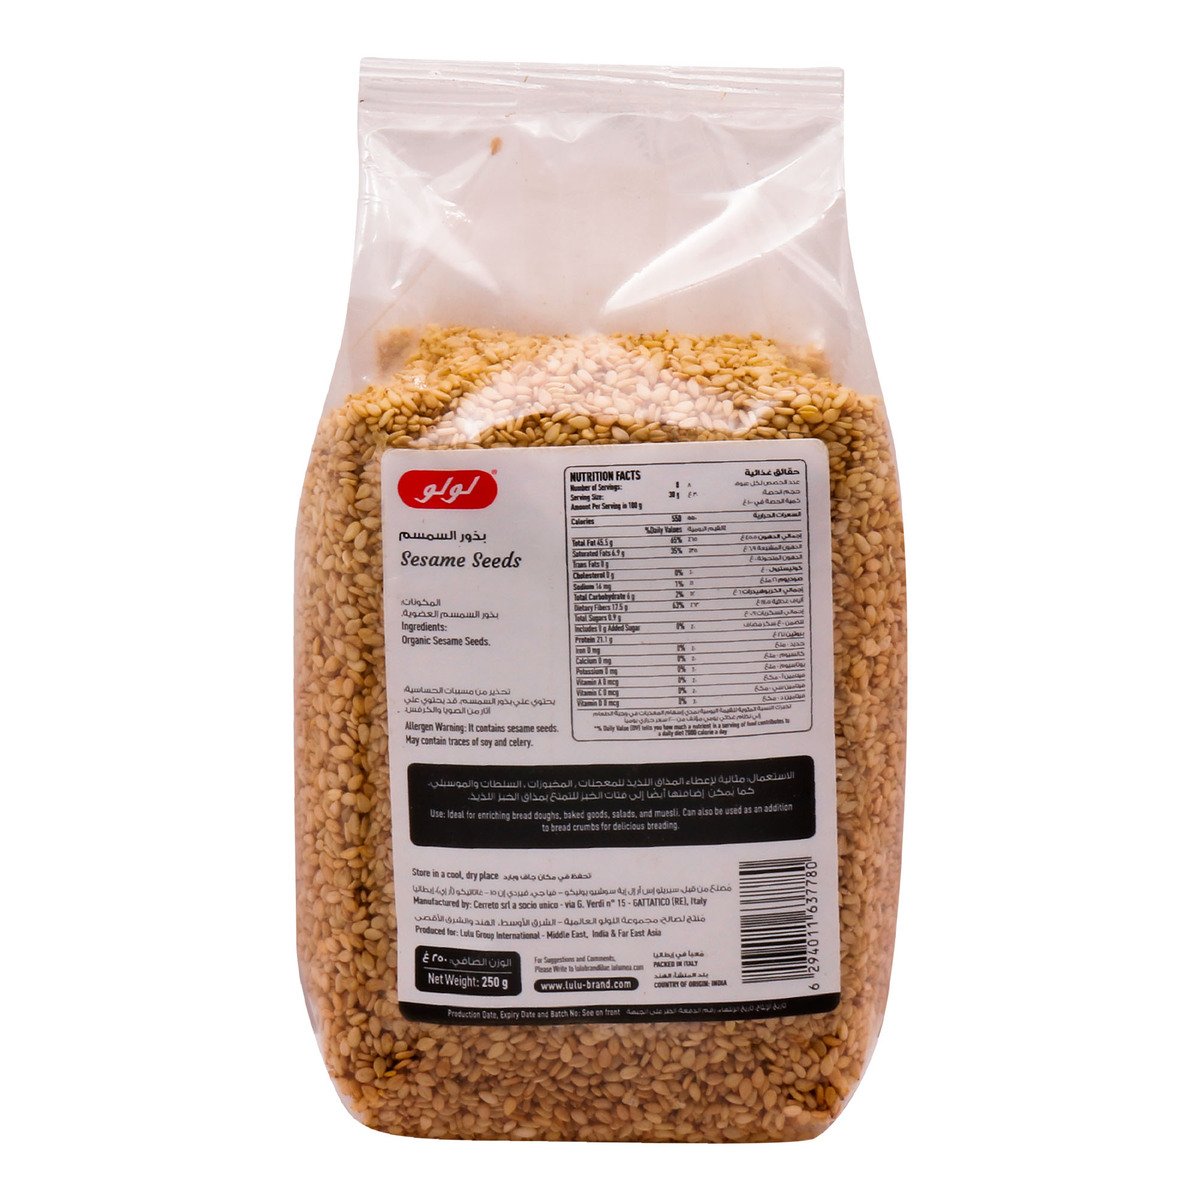 LuLu Organic Sesame Seeds 250 g